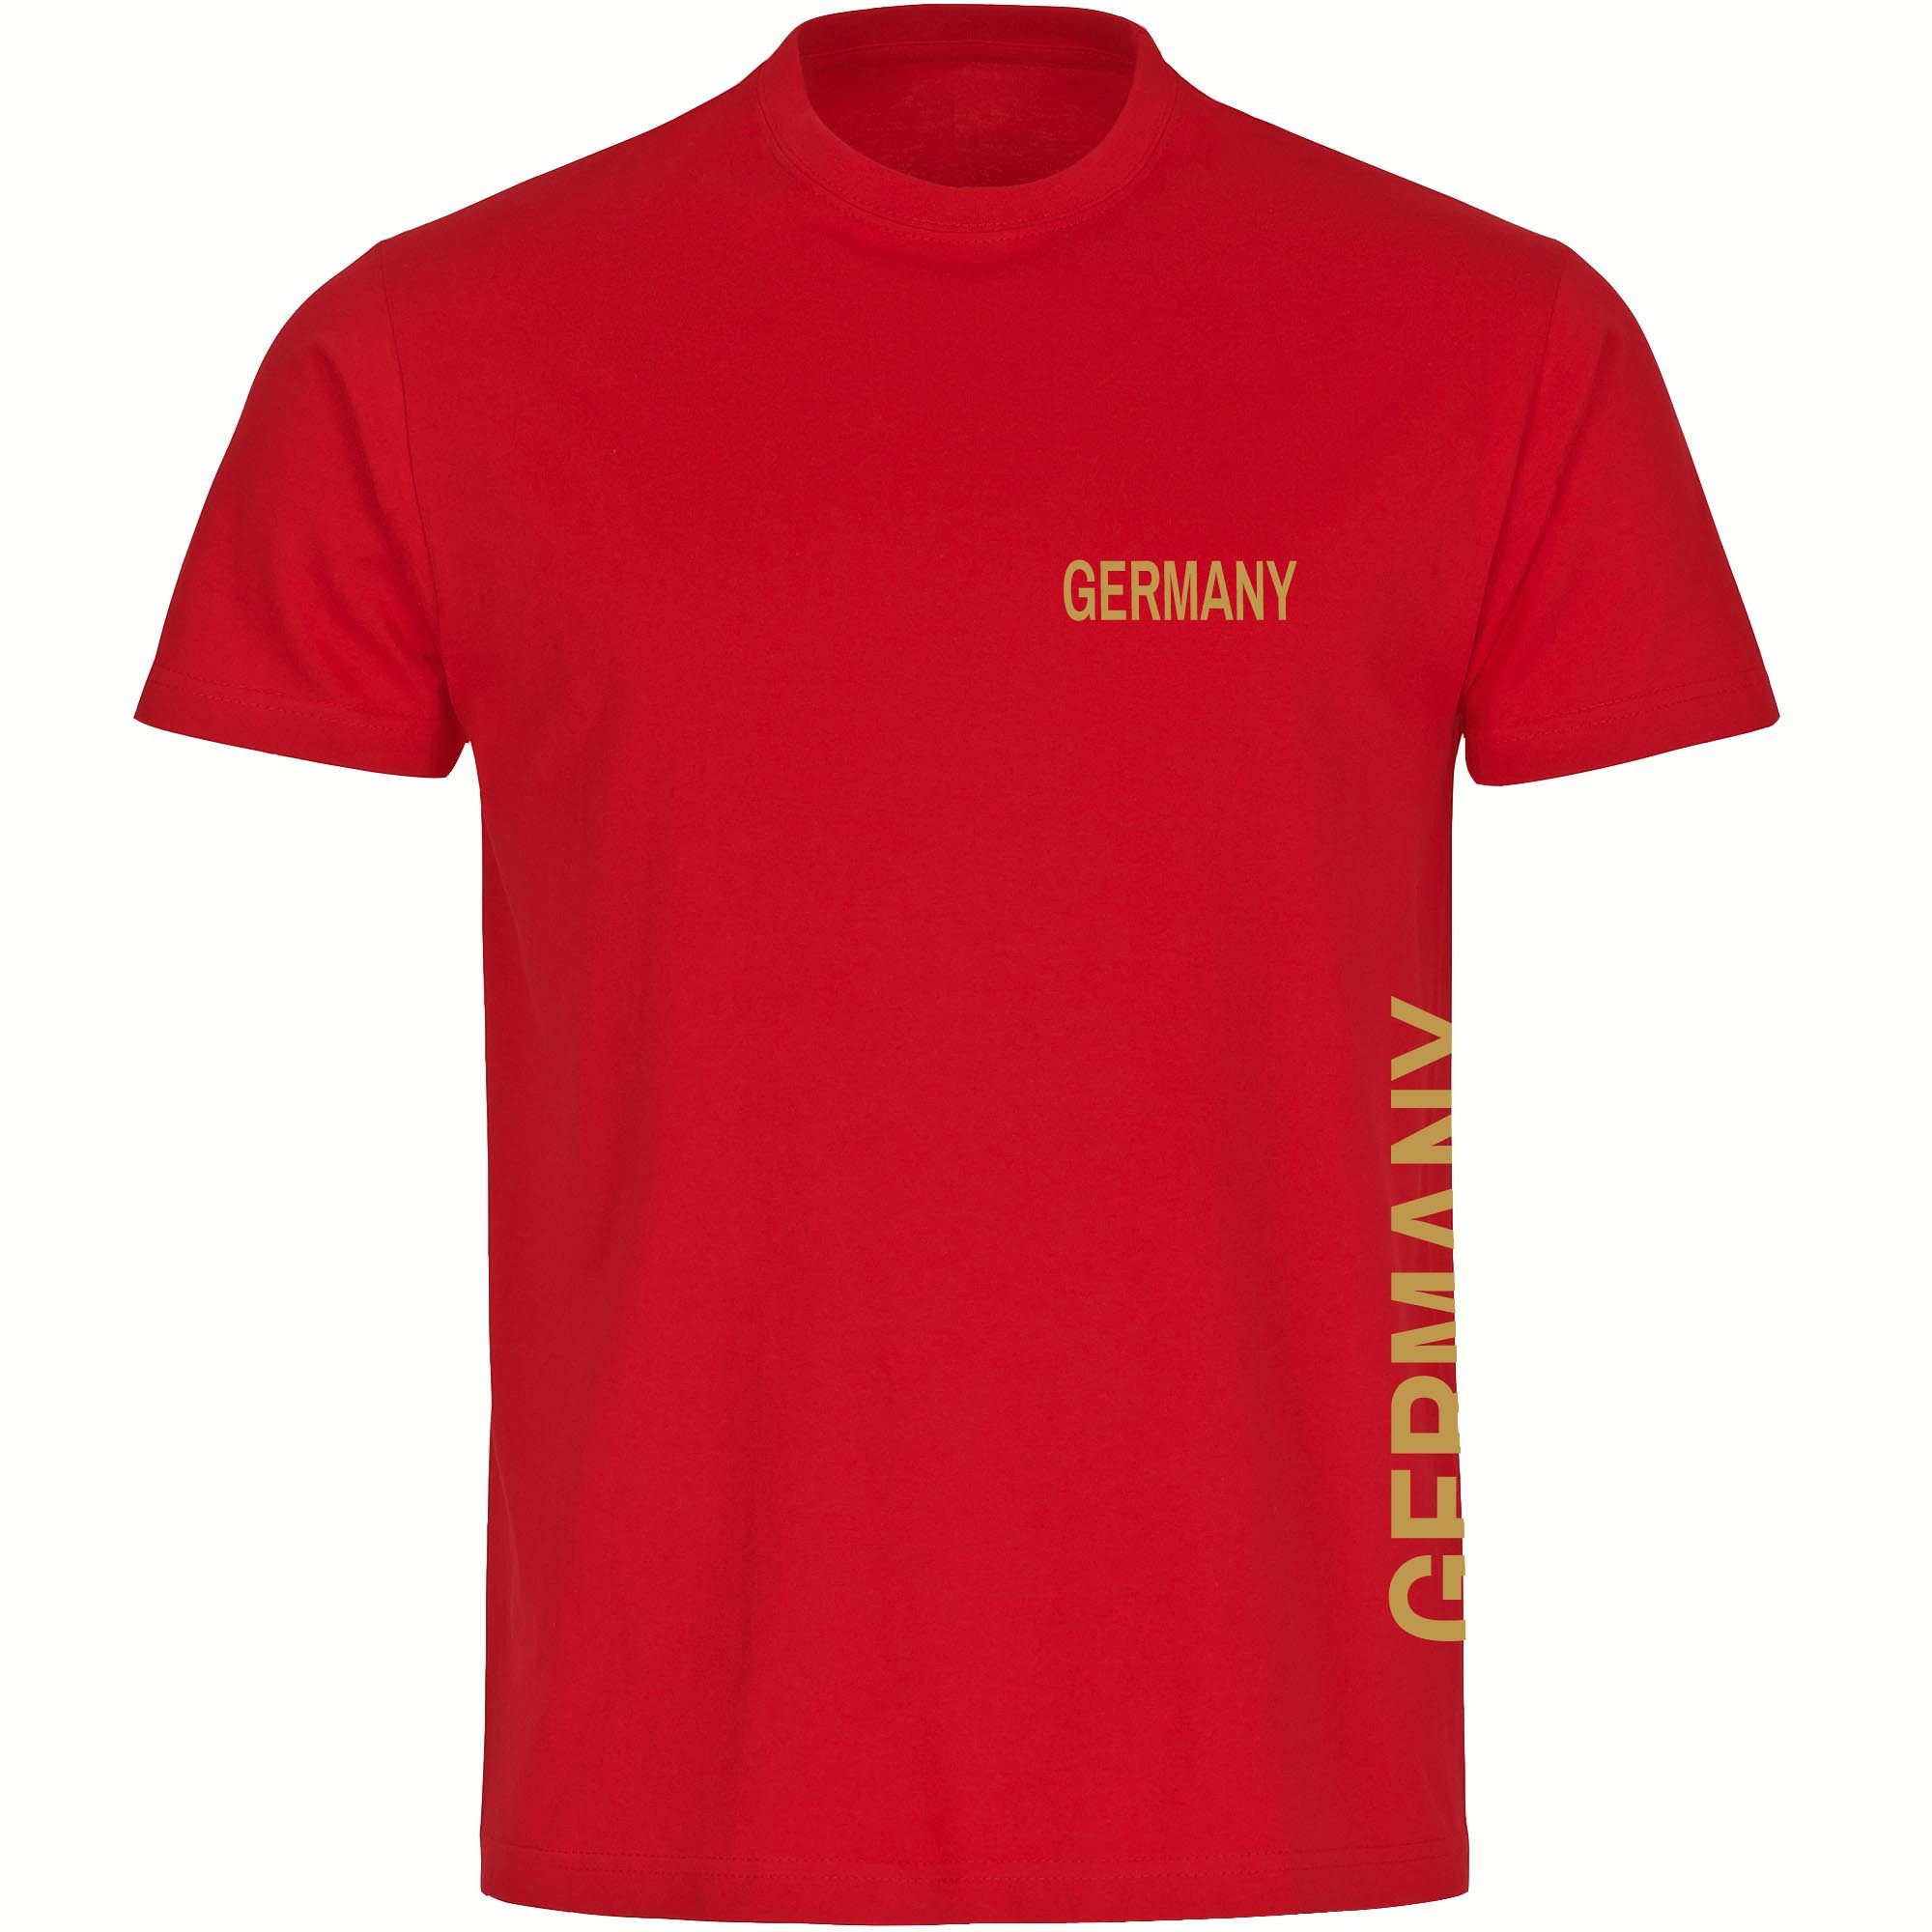 multifanshop T-Shirt Herren Germany - Brust & Seite Gold - Männer